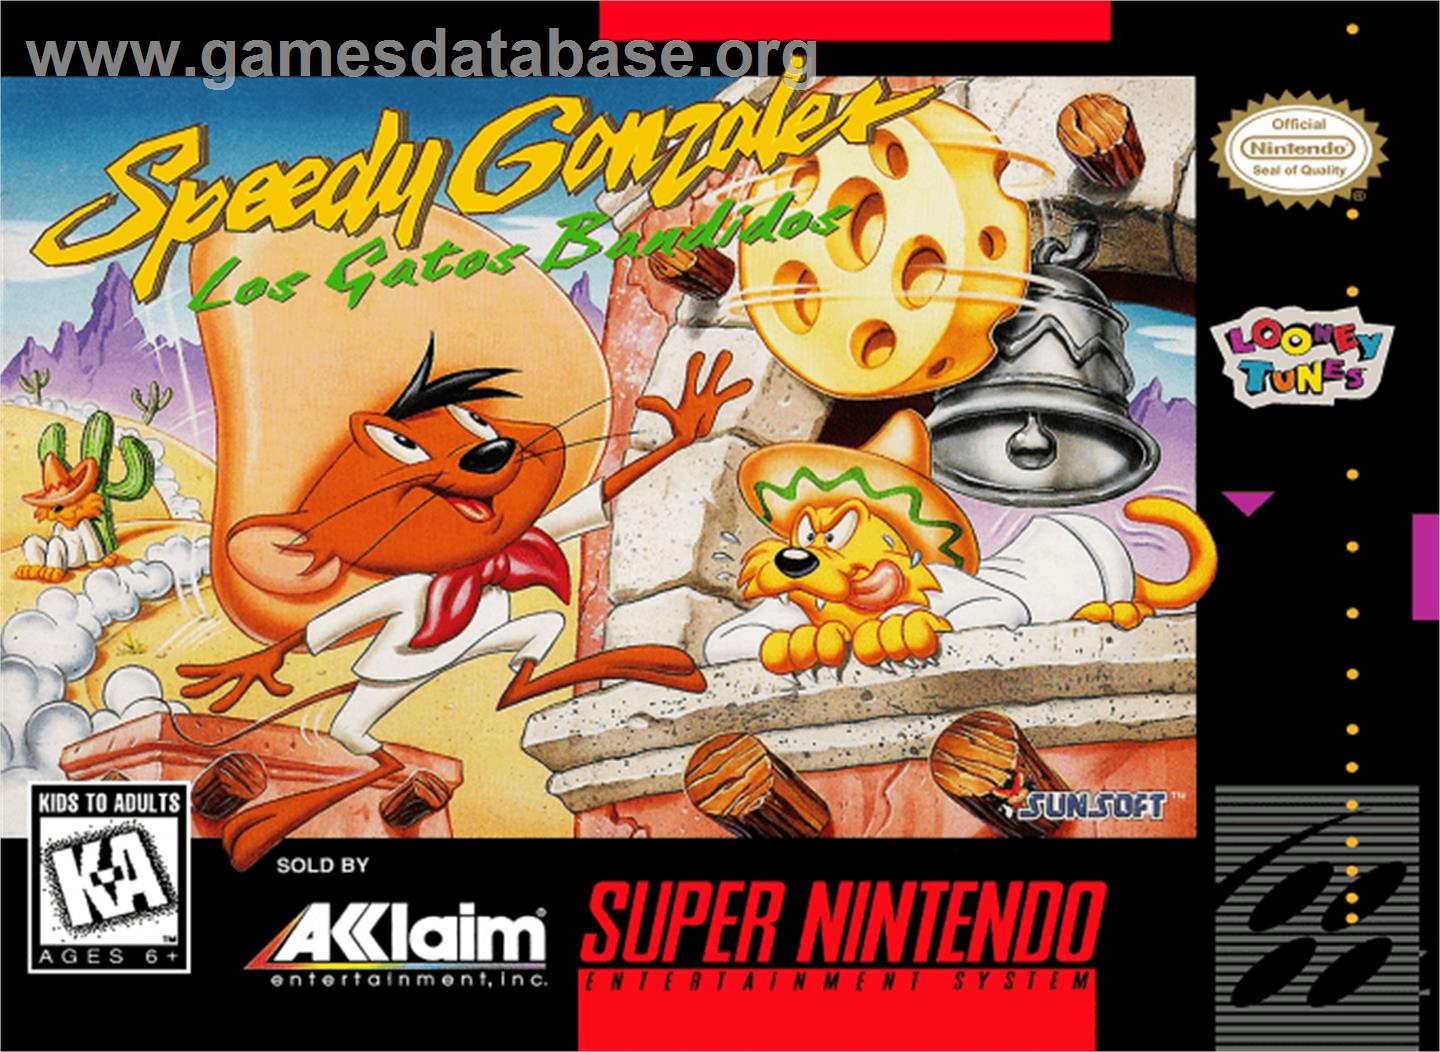 Speedy Gonzales in Los Gatos Bandidos - Nintendo SNES - Artwork - Box